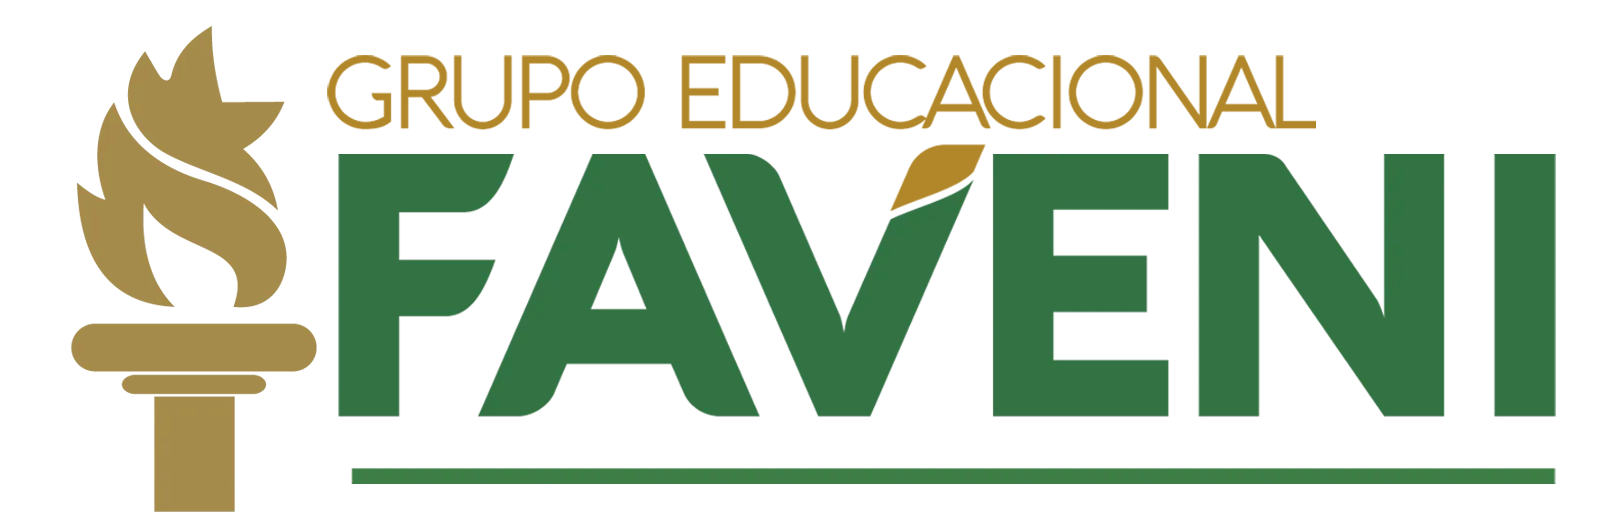 Grupo Educacional Faveni  FAVENI INDICADA AO PRÊMIO RECLAME AQUI 2021 -  Grupo Educacional Faveni